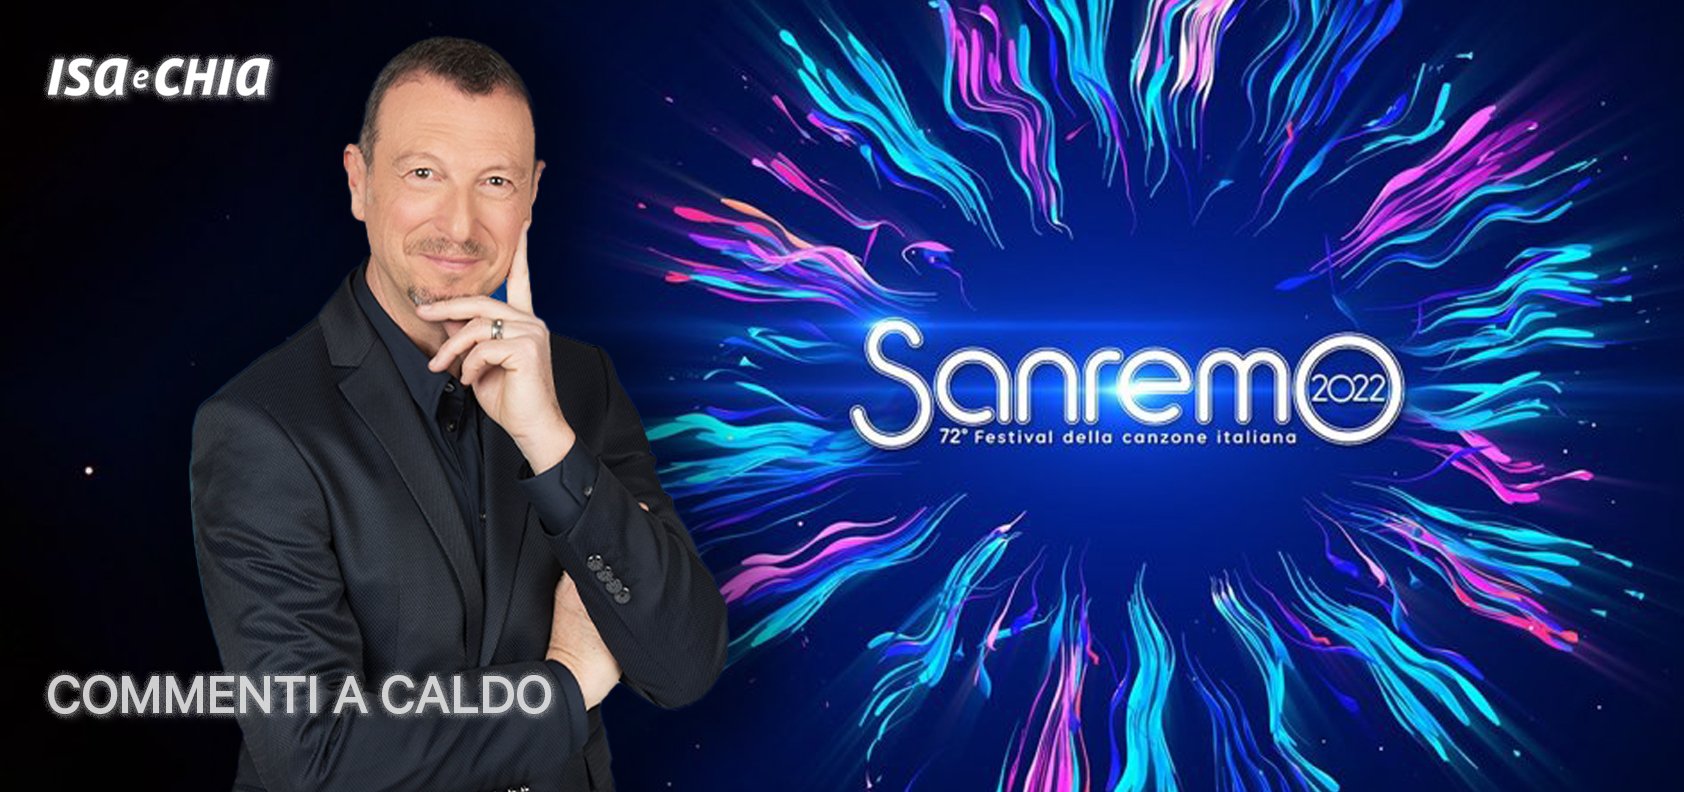 Sanremo 2022, la seconda serata: commenti a caldo